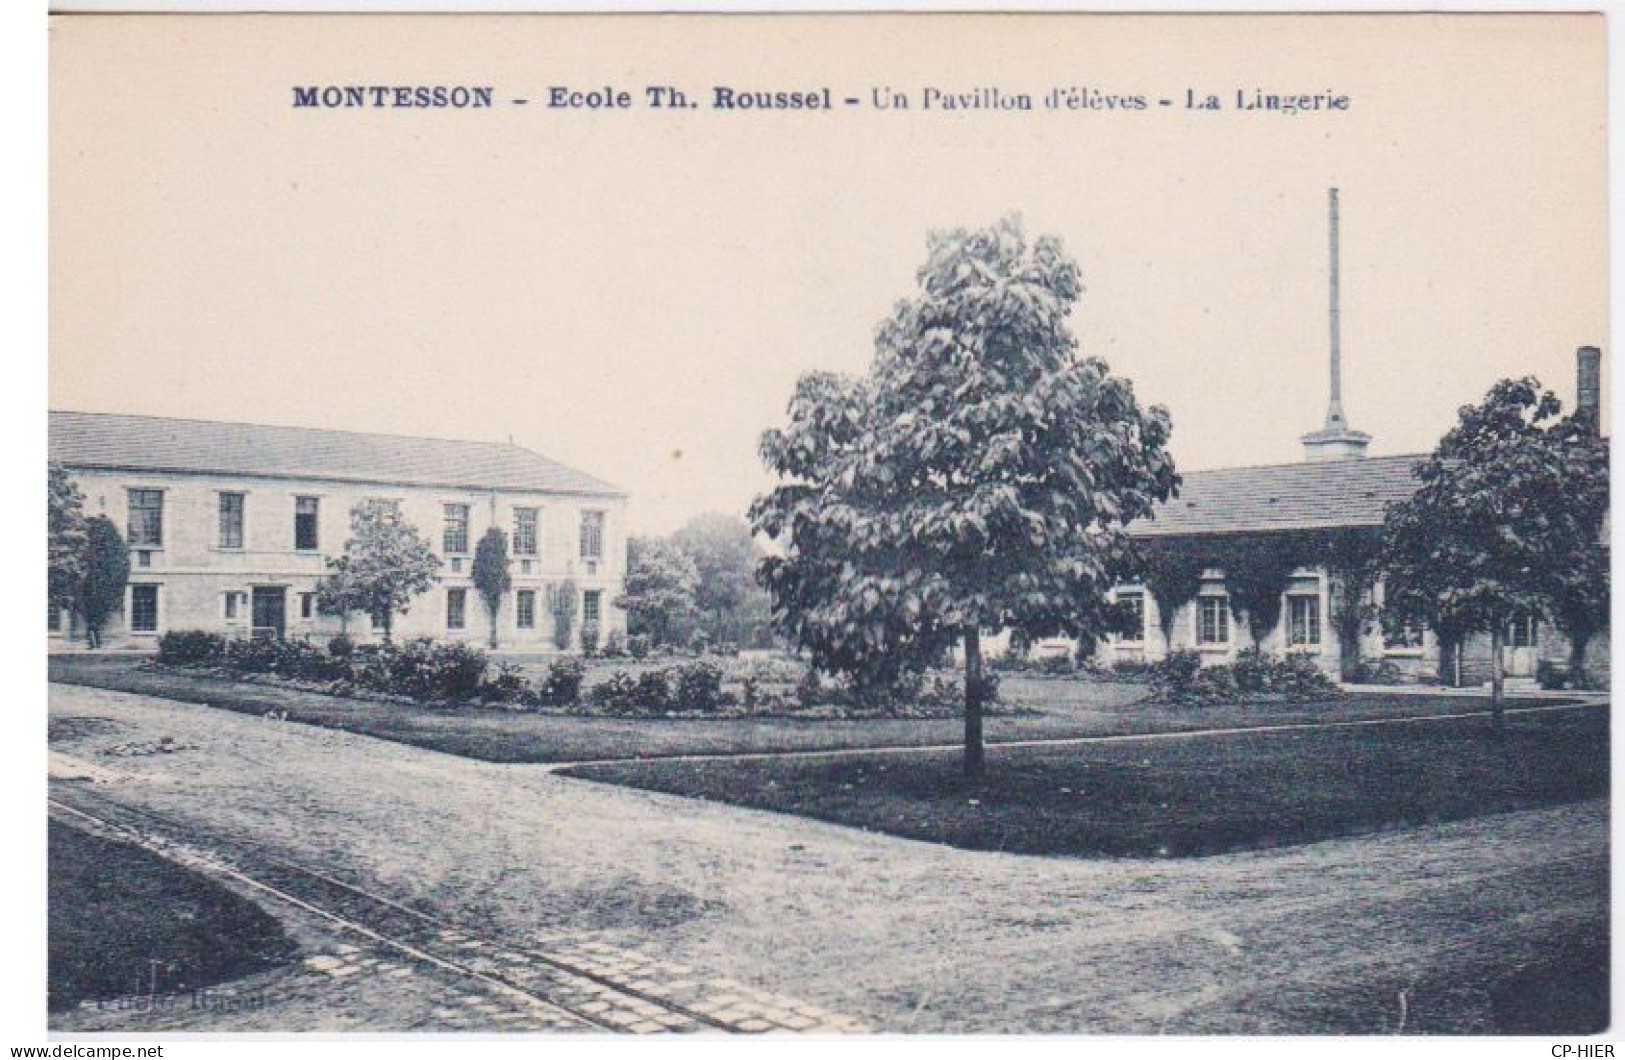 78 - MONTESSON - ECOLE TH. ROUSSEL - UN PAVILLON D'ELEVES - LA LINGERIE - Montesson